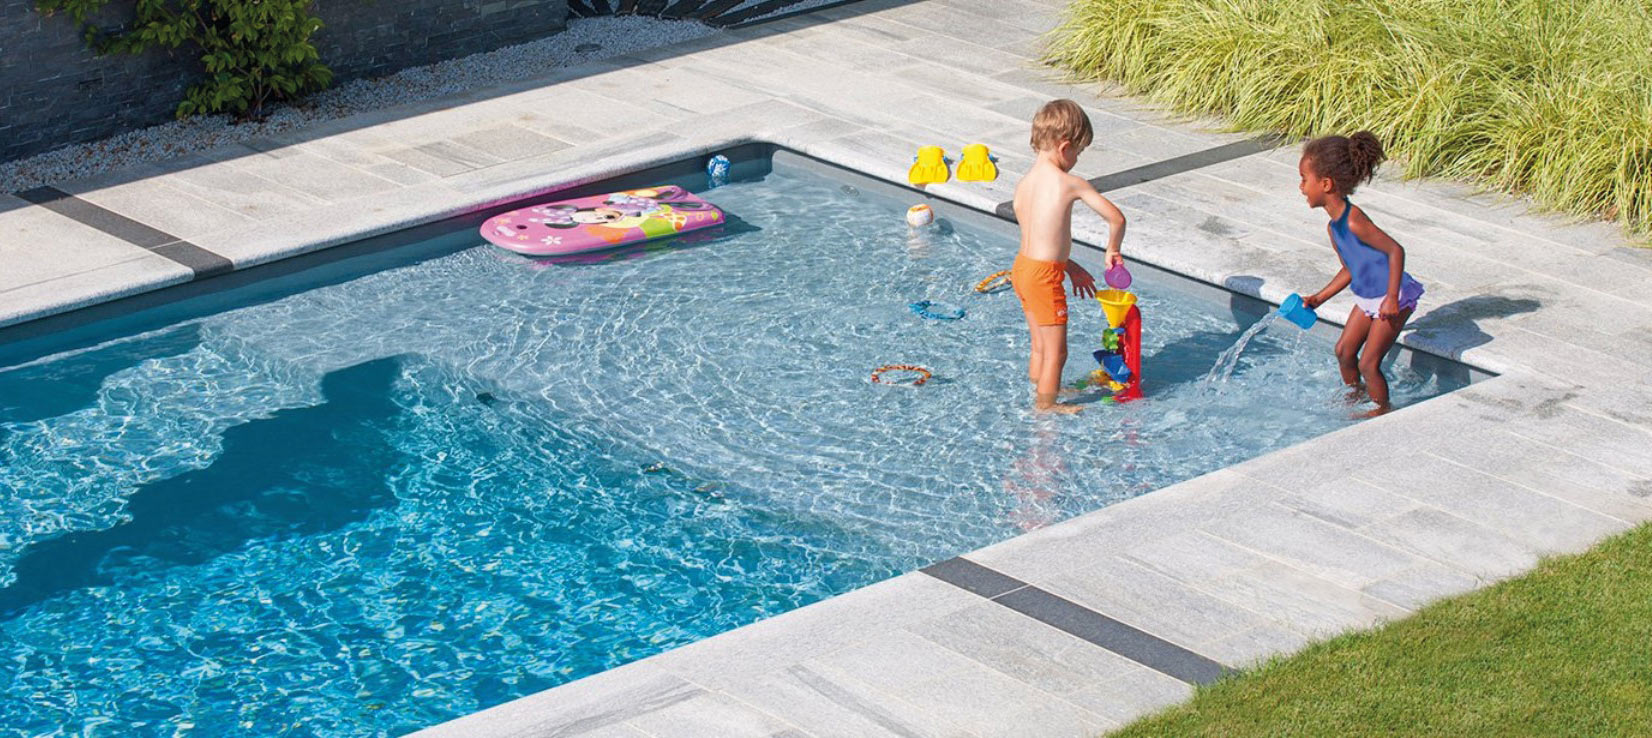 Livskvalitet för hela familjen - i en pool levererad av Pool4You.